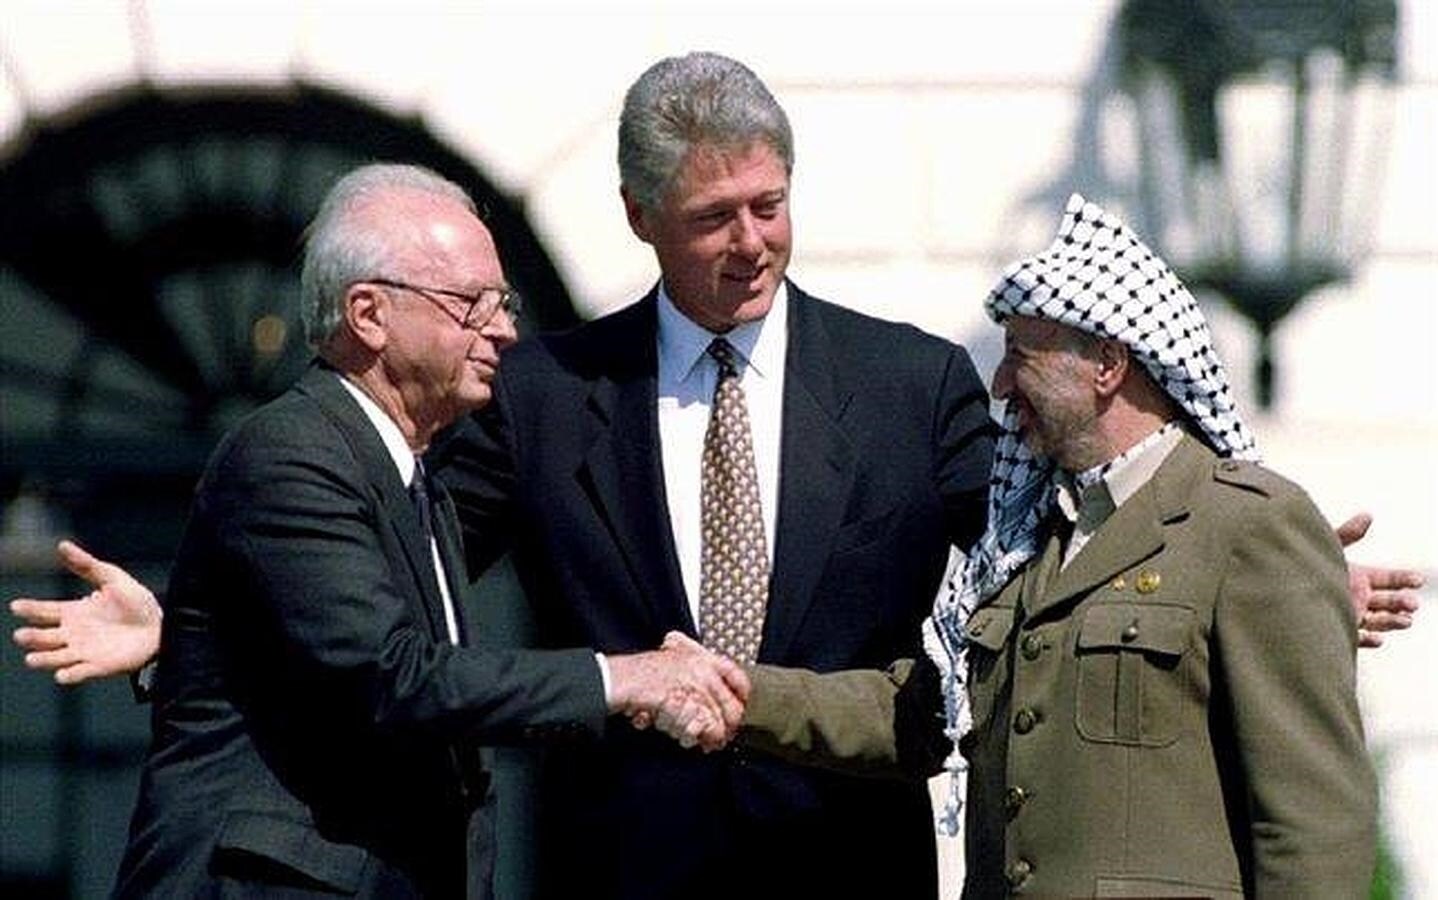 Simbólico apretón entre el histórico líder palestino Yasir Arafat y el primer ministro israelí, Isaac Rabin, tras la firma de un acuerdo de paz auspiciado por Clinton, el 13 de septiembre de 1993